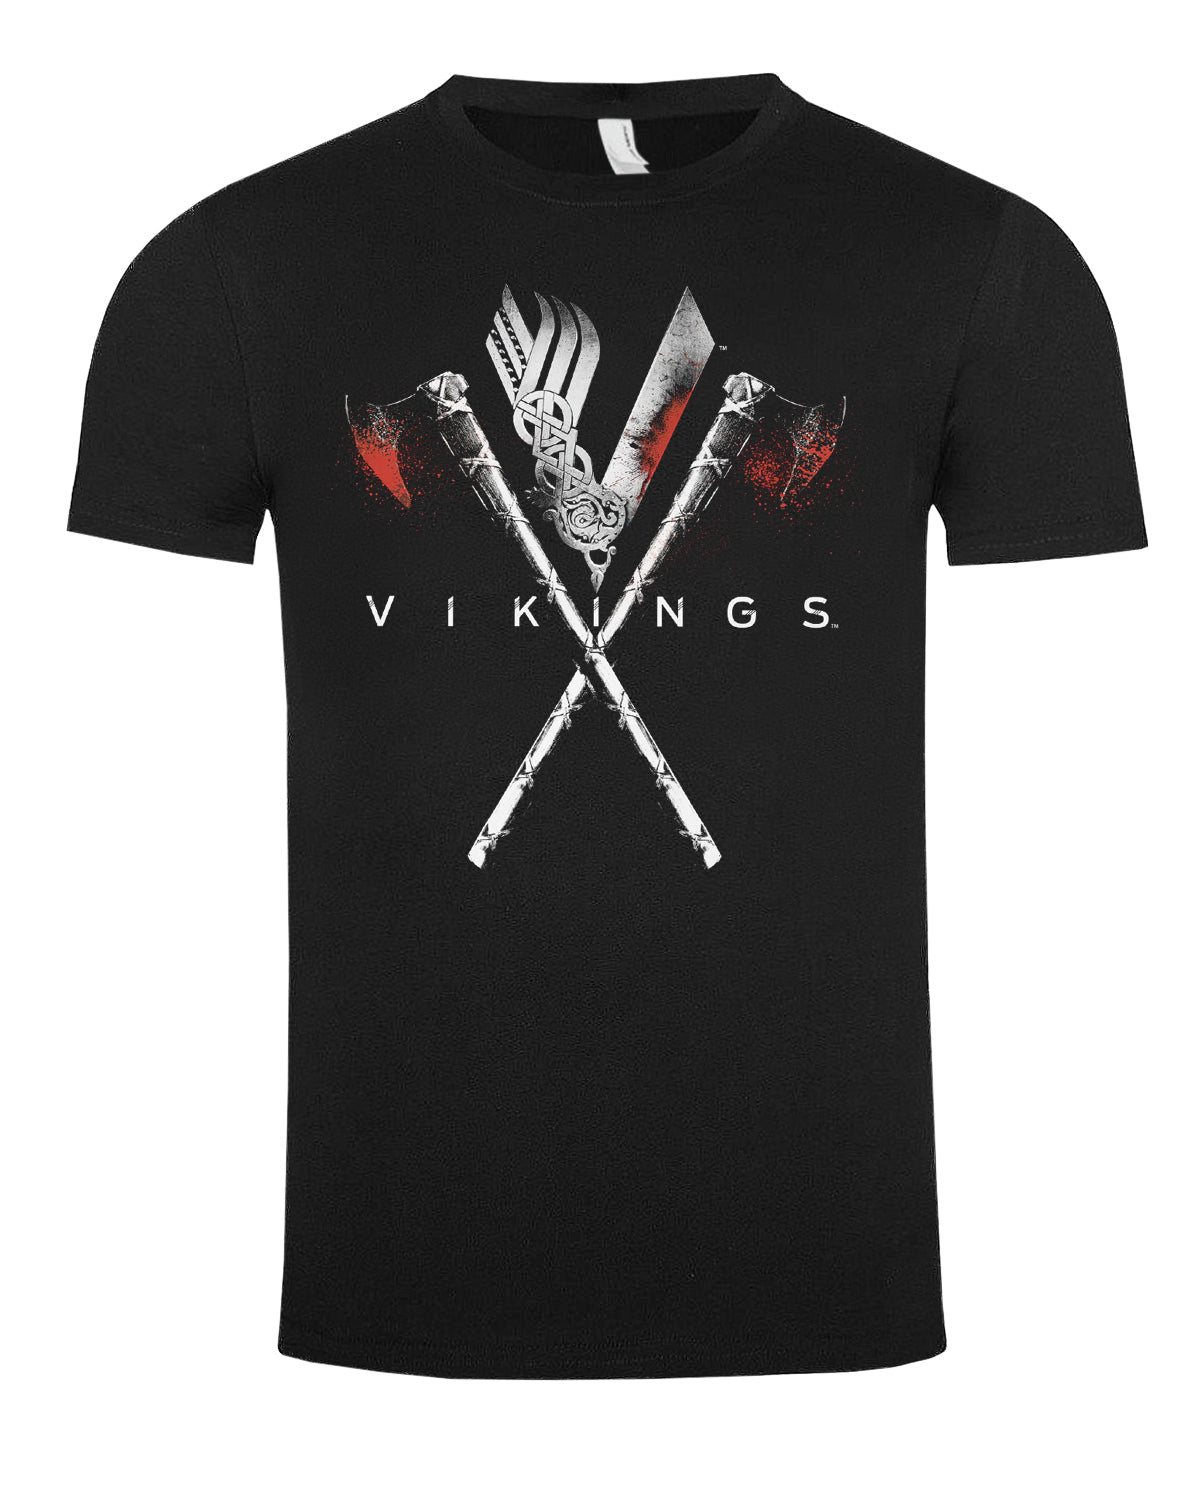 Print Shirt Vikings Axes t-paita - Musta